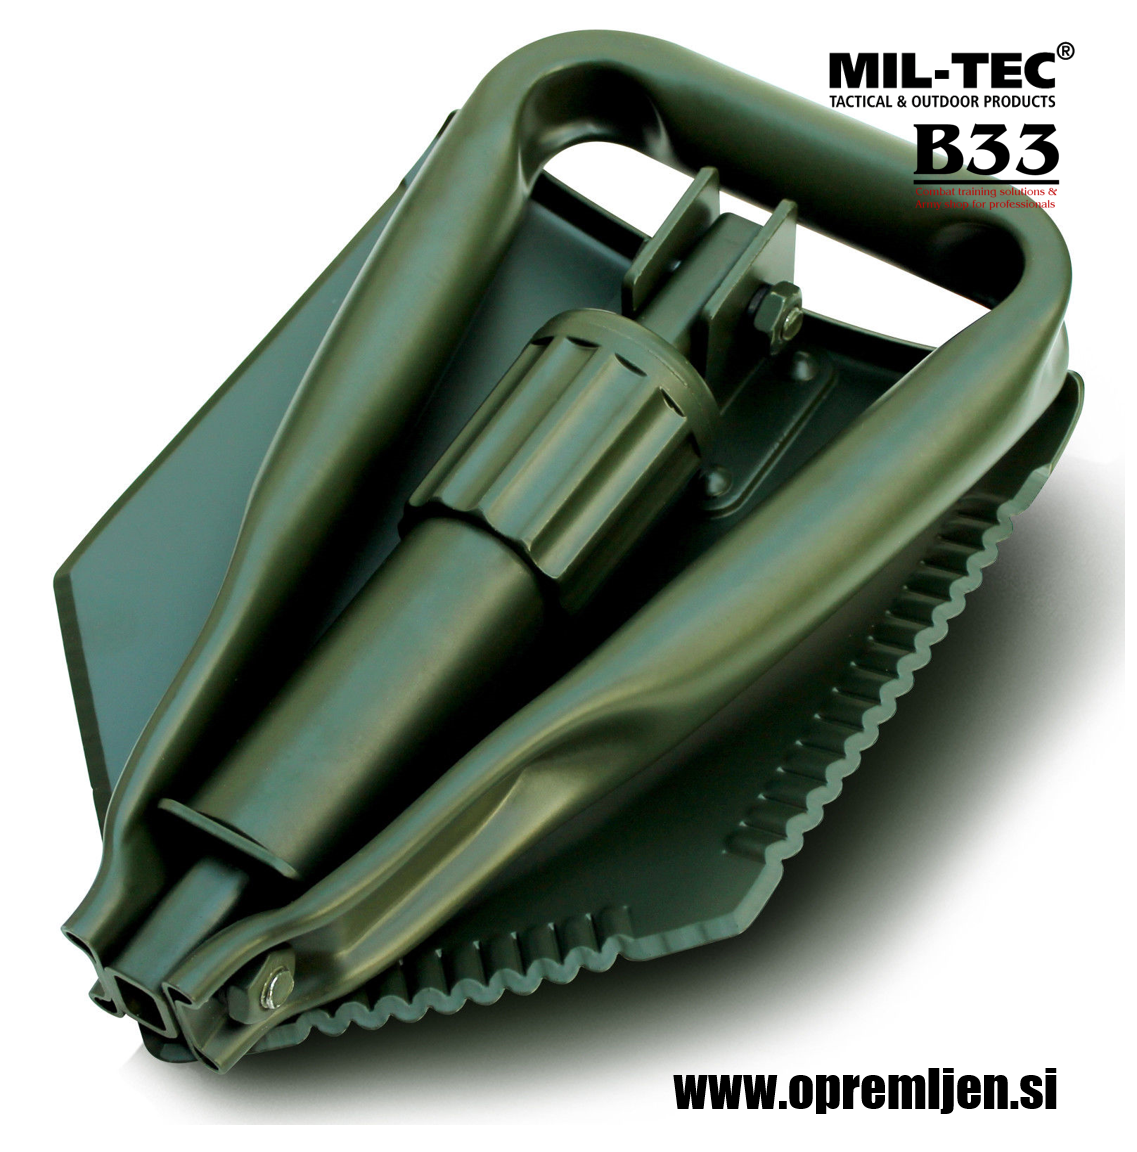 Profesionalna zložljiva vojaška lopata z robustnim tokom za namestitev na opasač ali nahrbtnik olivne barve MILTEC by B33 army shop at www.opremljen.si trgovina z vojaško opremo, vojaška trgovina